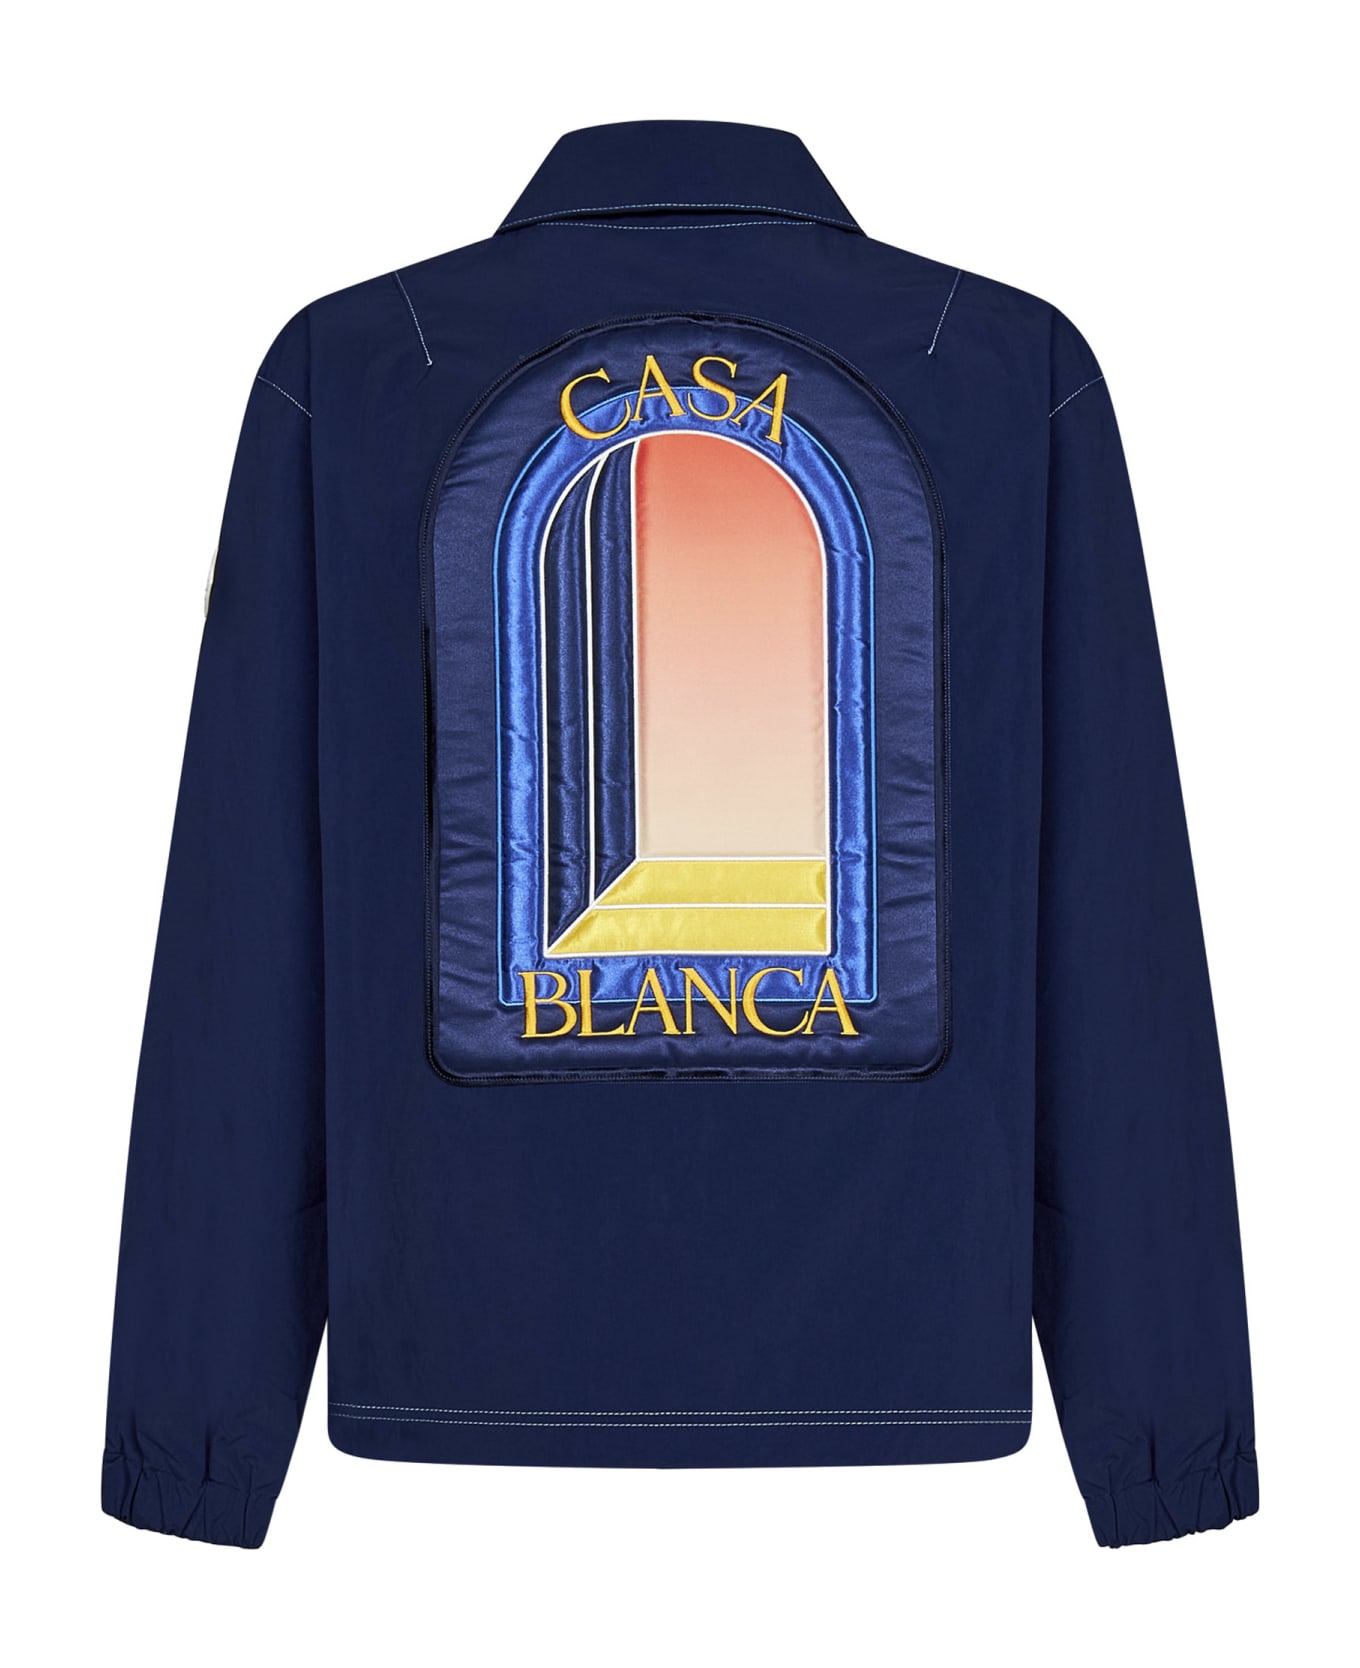 Casablanca L'arche De Nuit Patch Jacket - Blue